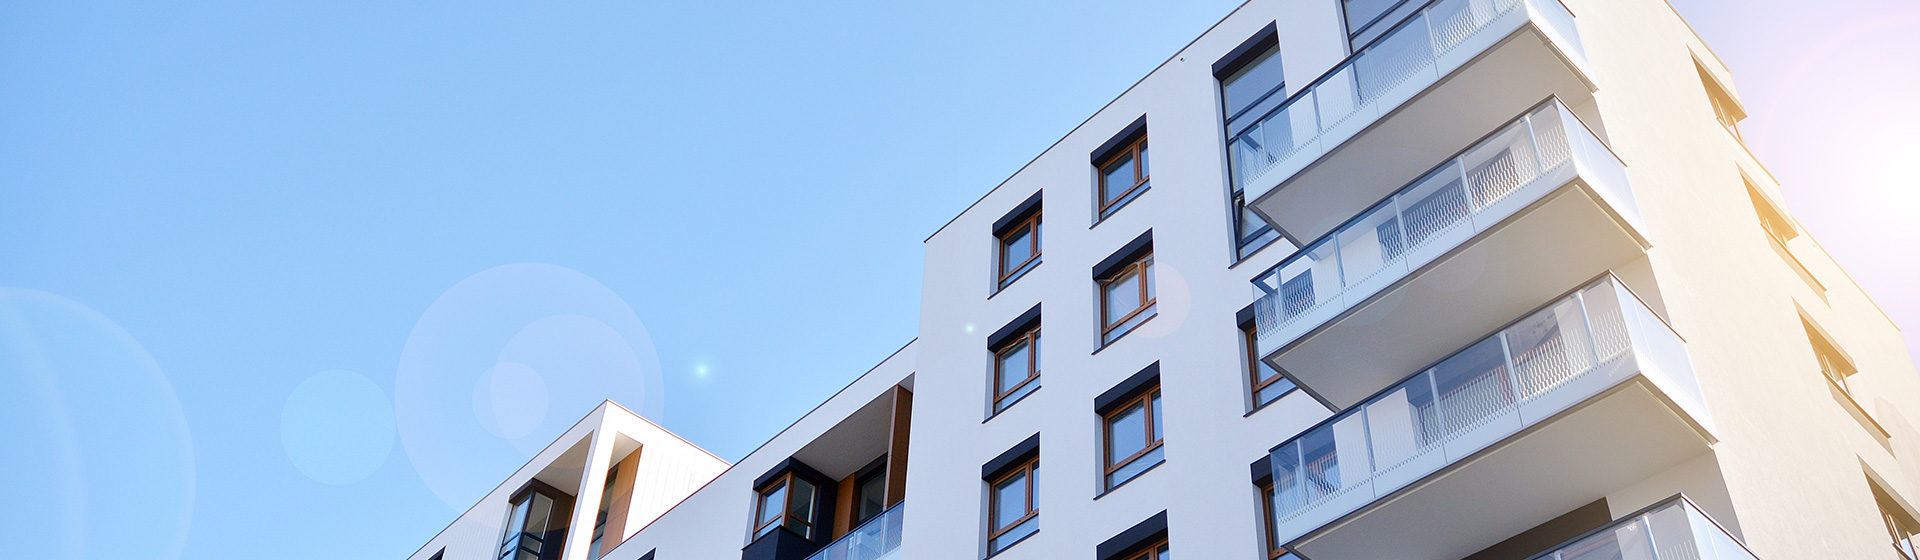 Moderne Mehrfamilienhäuser mit Balkonen unter blauem Himmel – Impressum inveni consulting